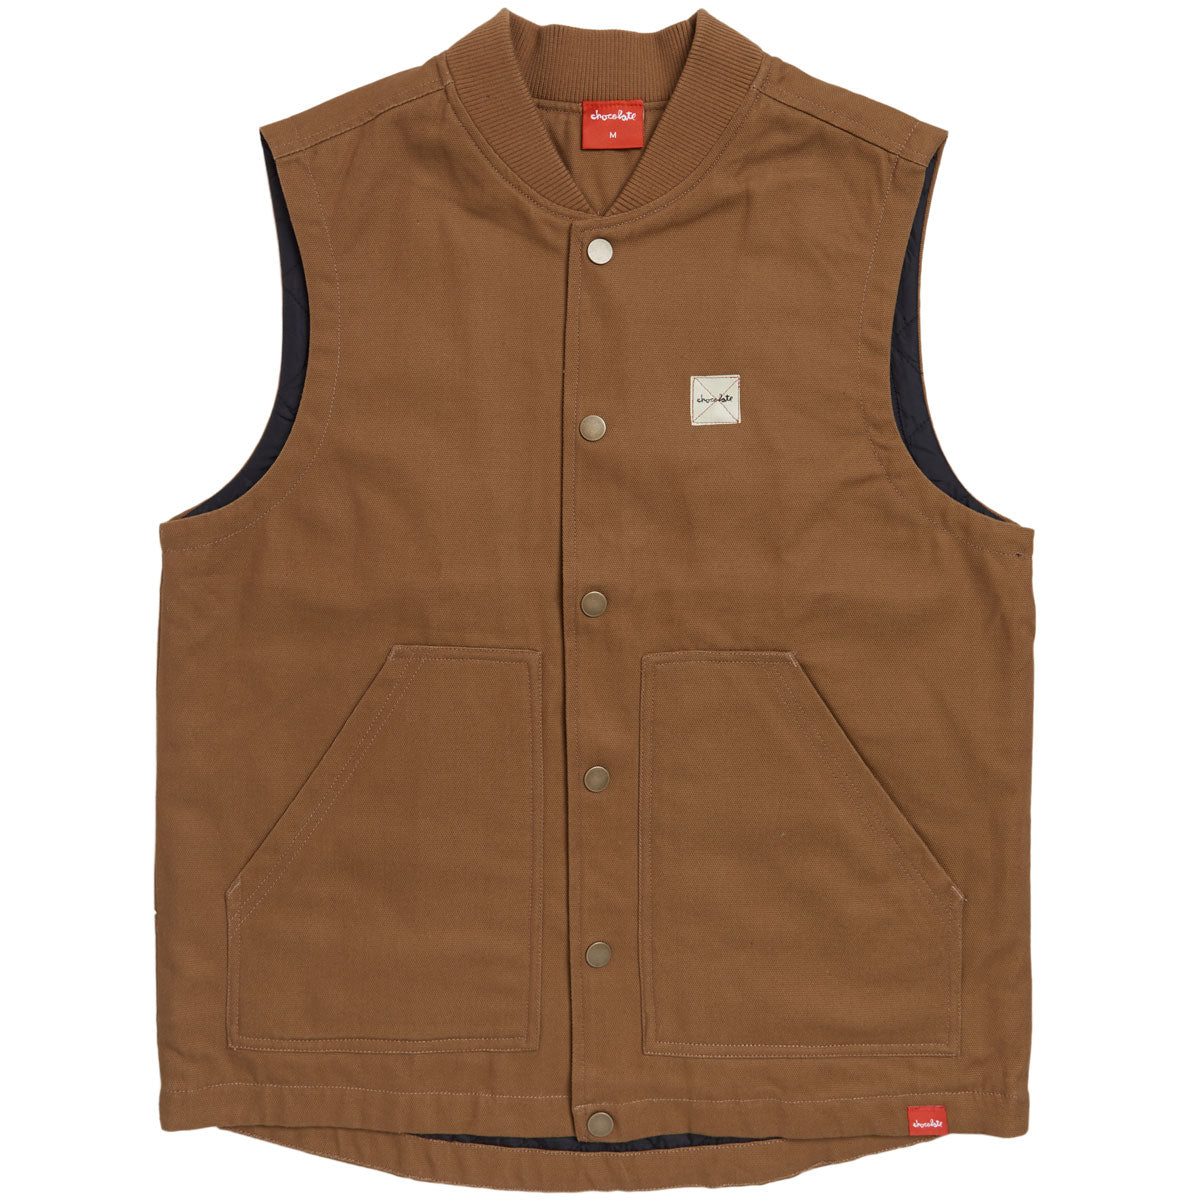 Chocolate Work Vest Jacket - Saddle image 1